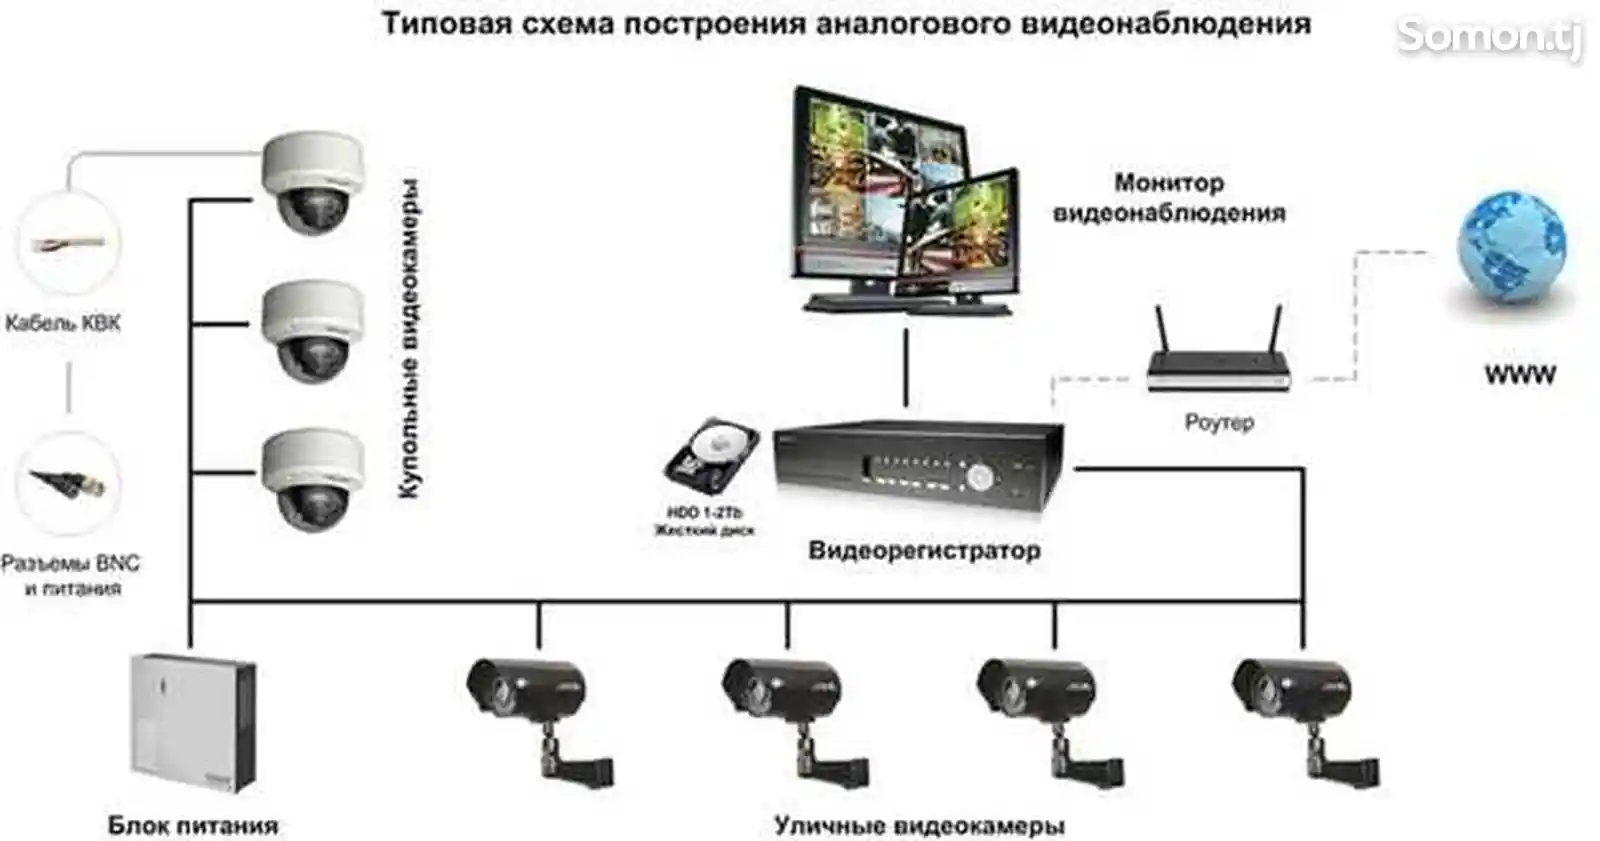 Установка, монтаж, настройка систем видеонаблюдения-2